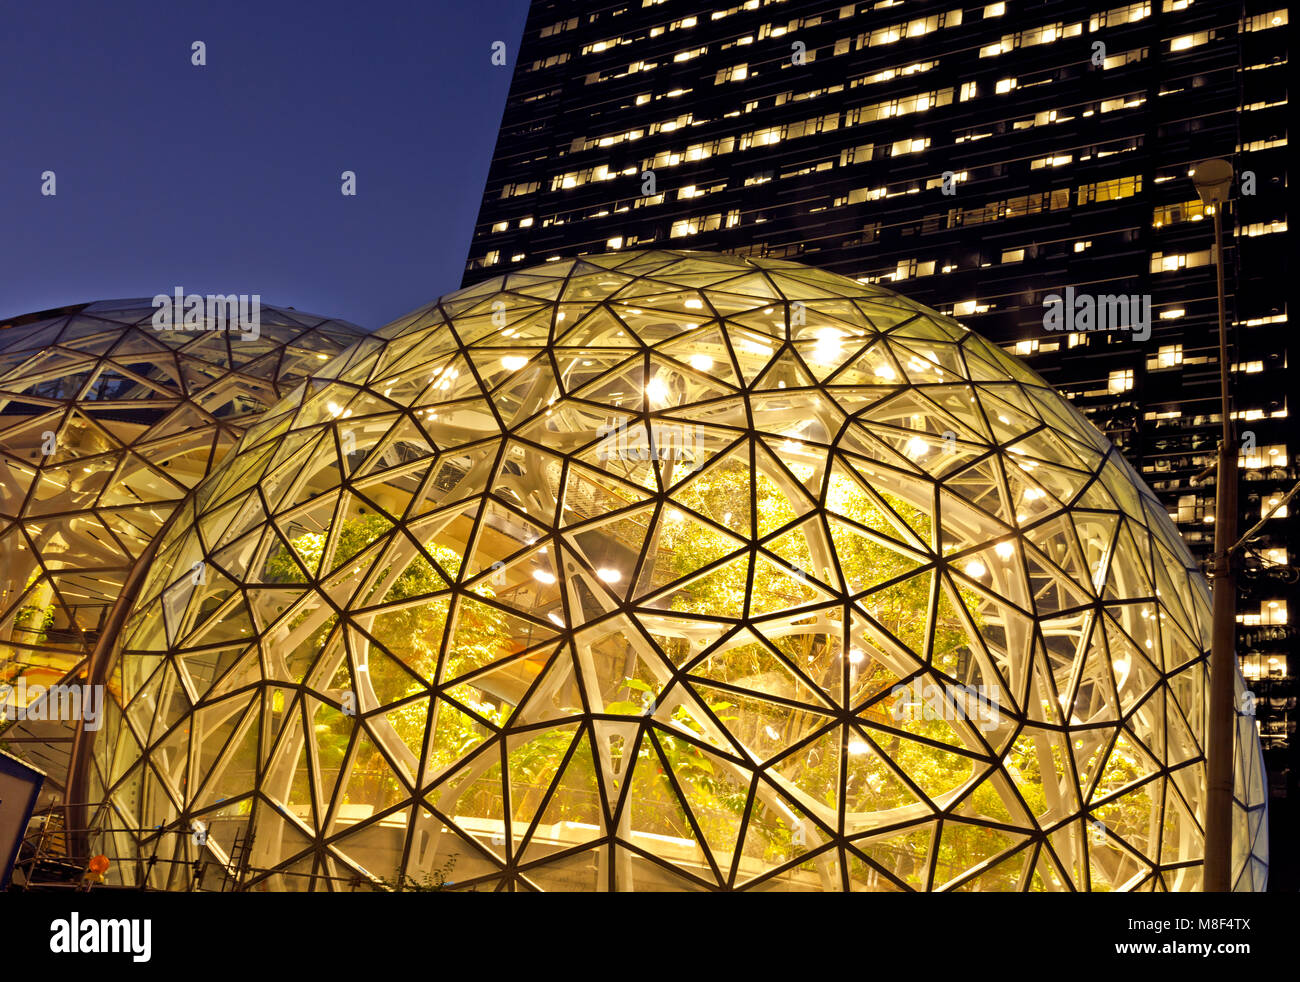 WASHINGTON - les trois biosphères amazoniennes pleines de plantes exotiques et les tours amazoniennes dans le centre-ville de Seattle à la 6e et Lenora. 2017 Banque D'Images